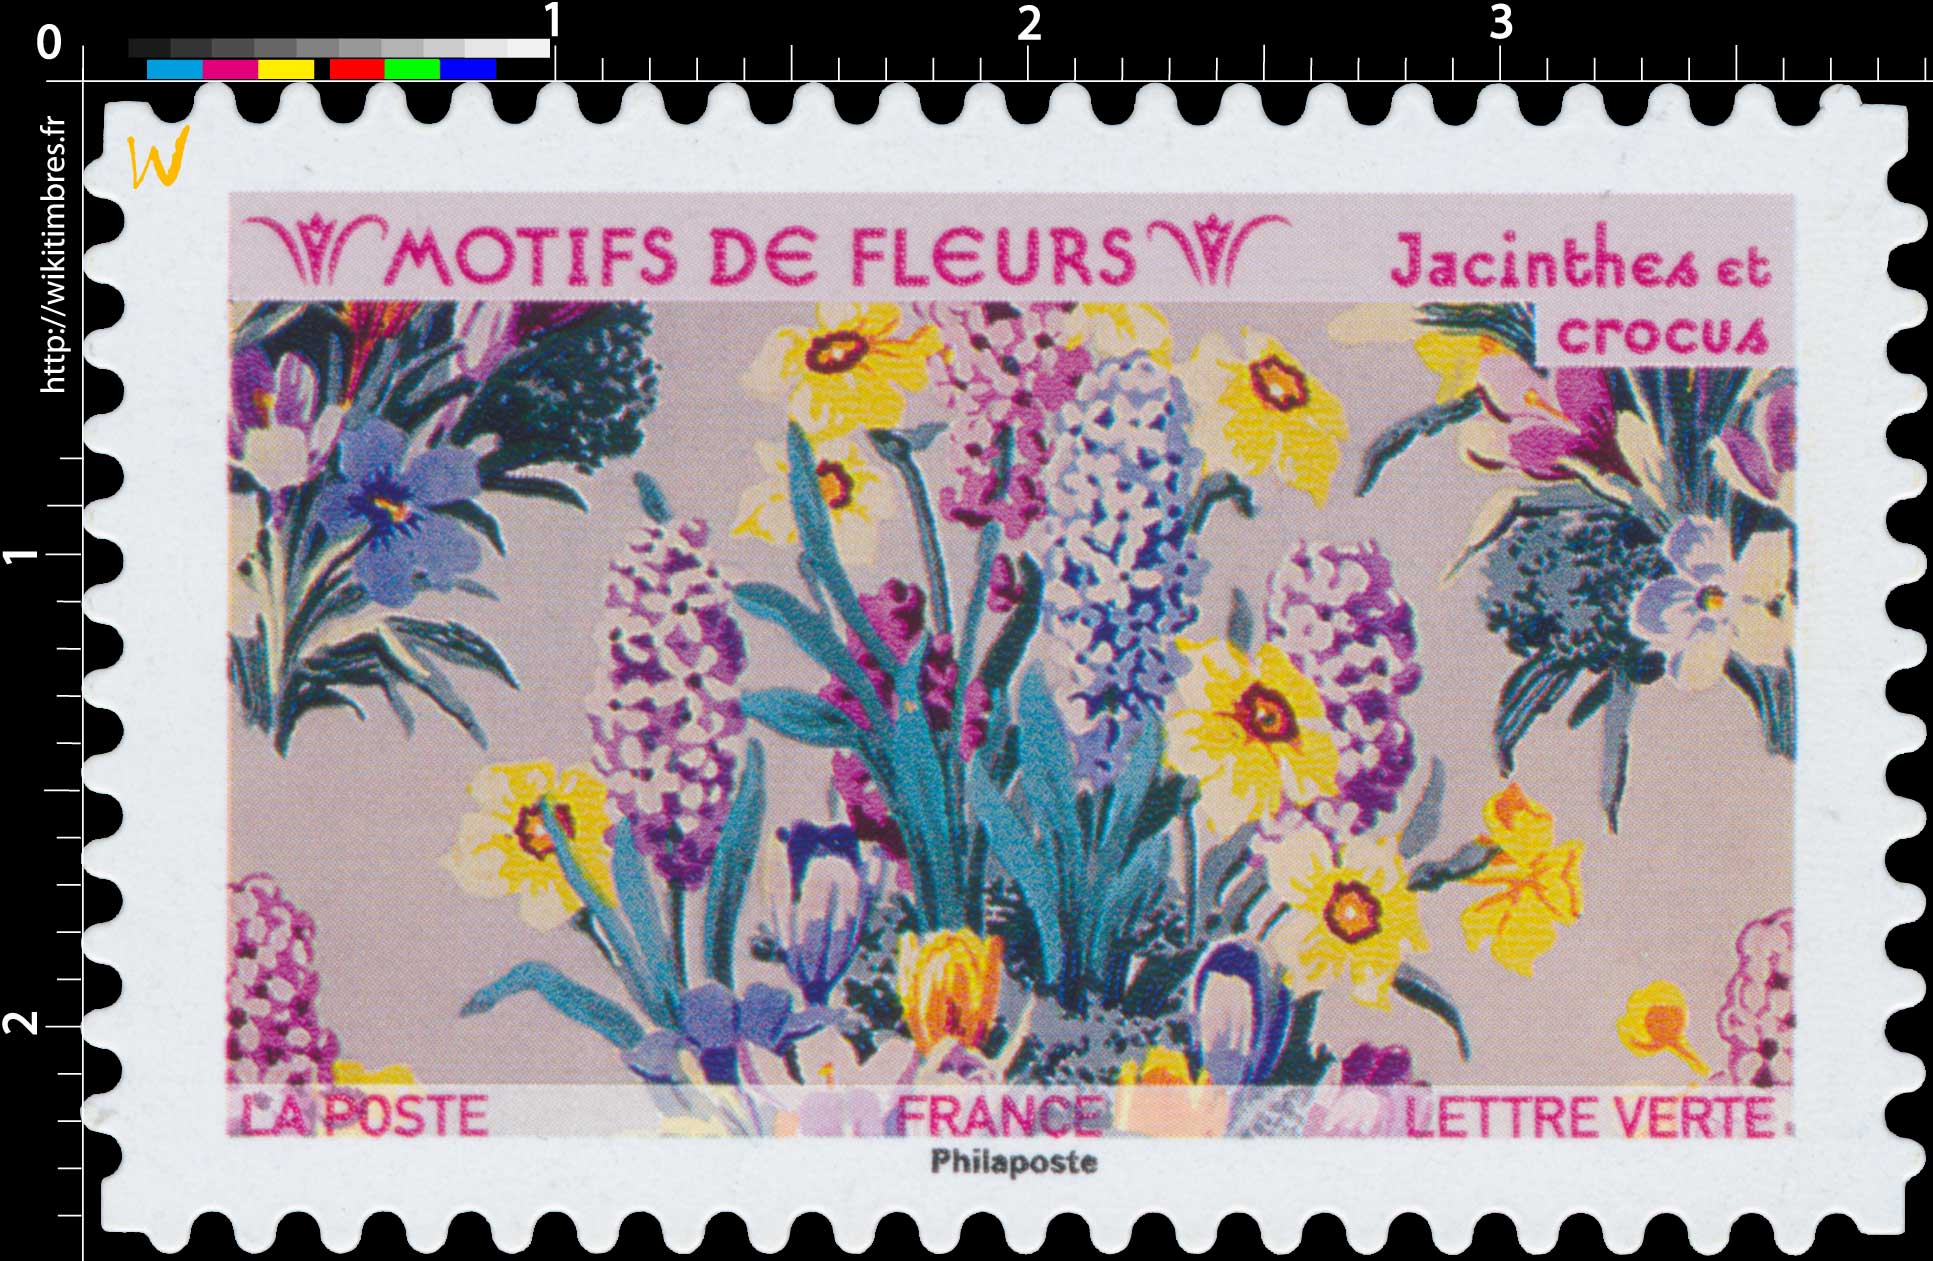 2021 Motifs de fleurs - Jacinthes et crocus